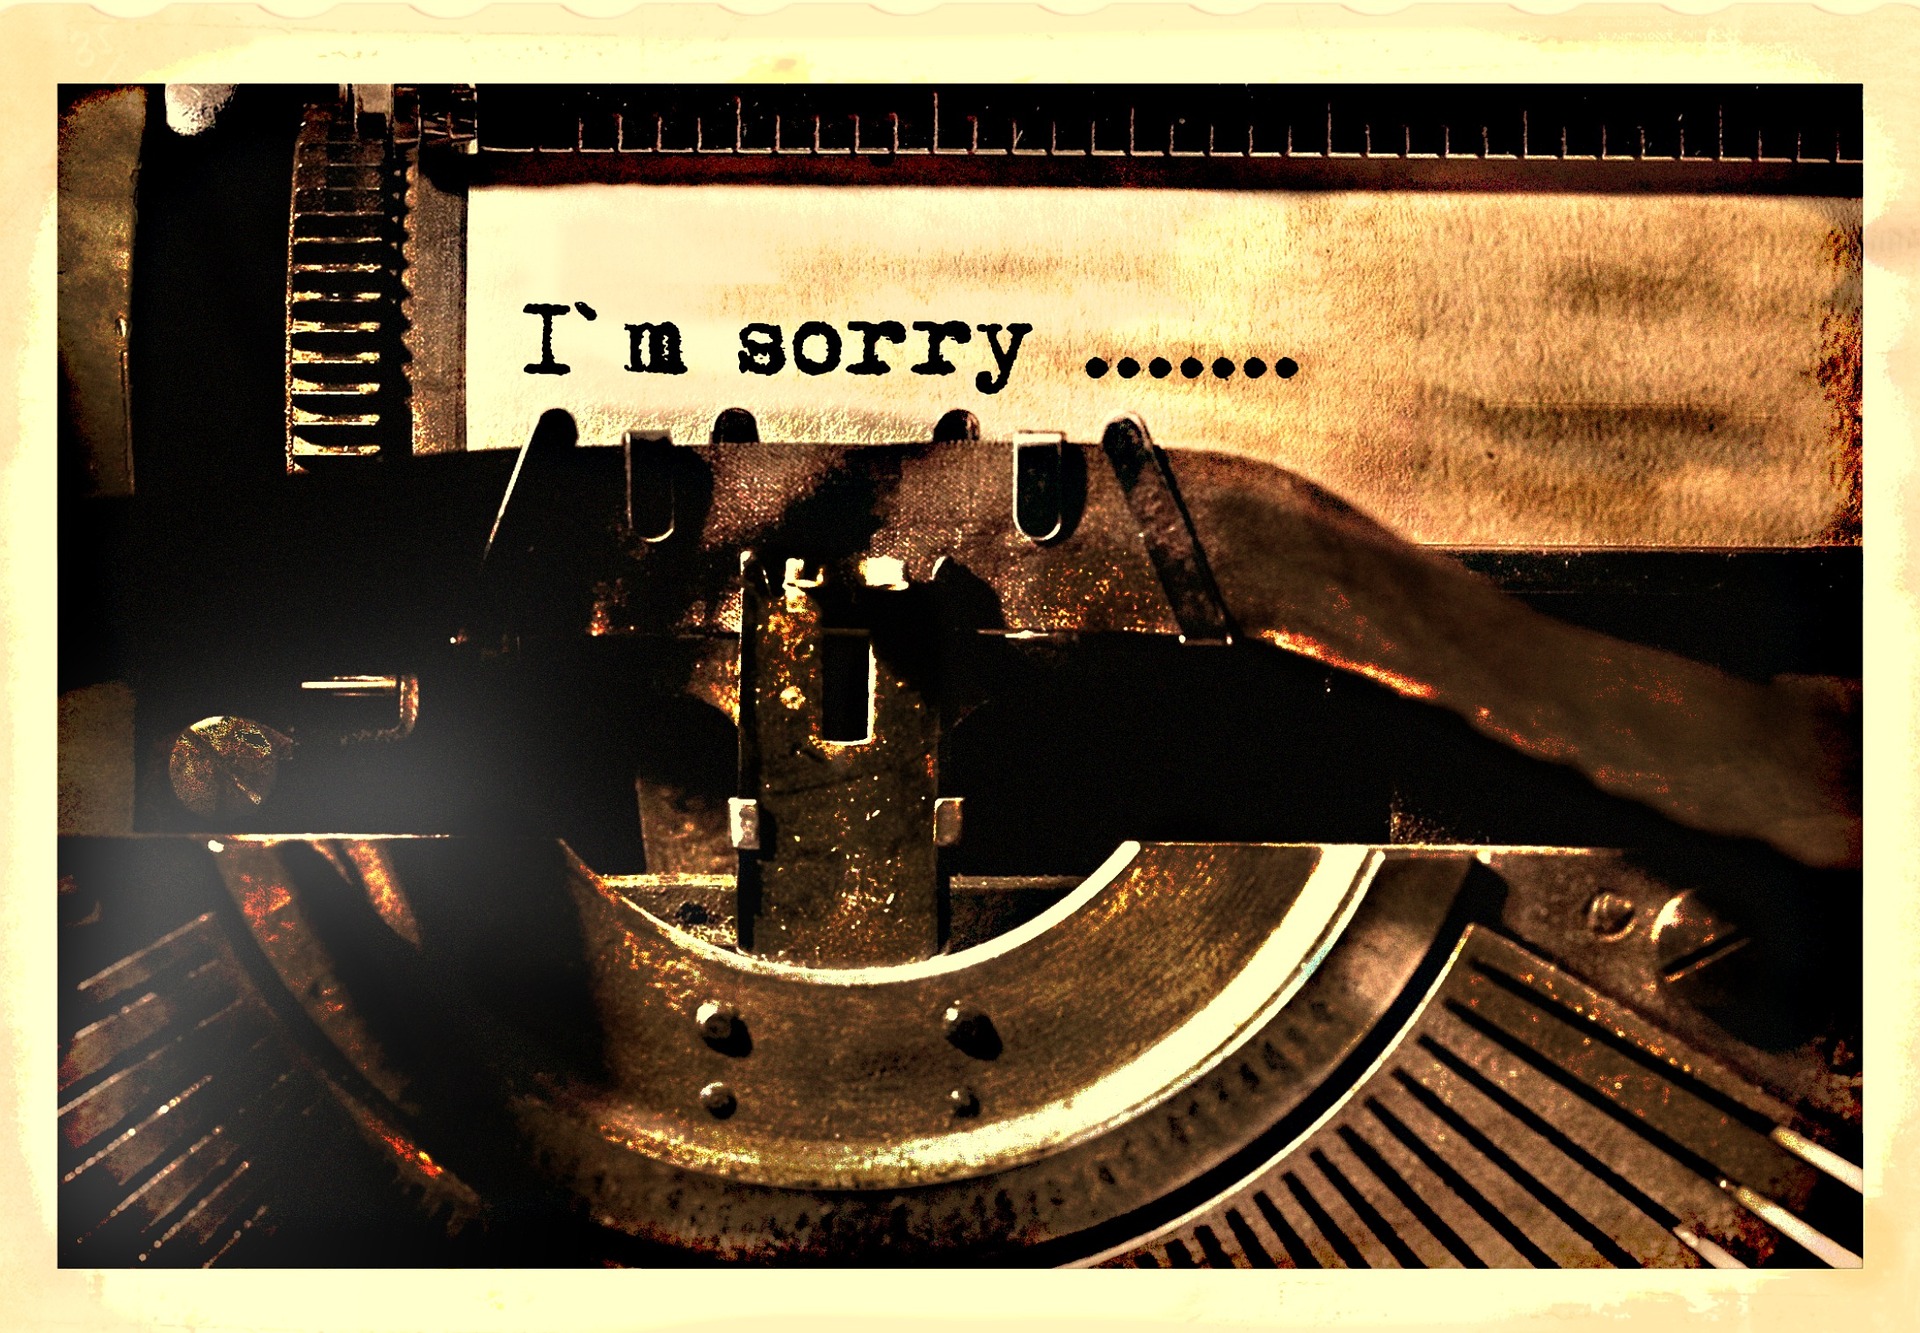 typewriter-sorry-1138667_1920